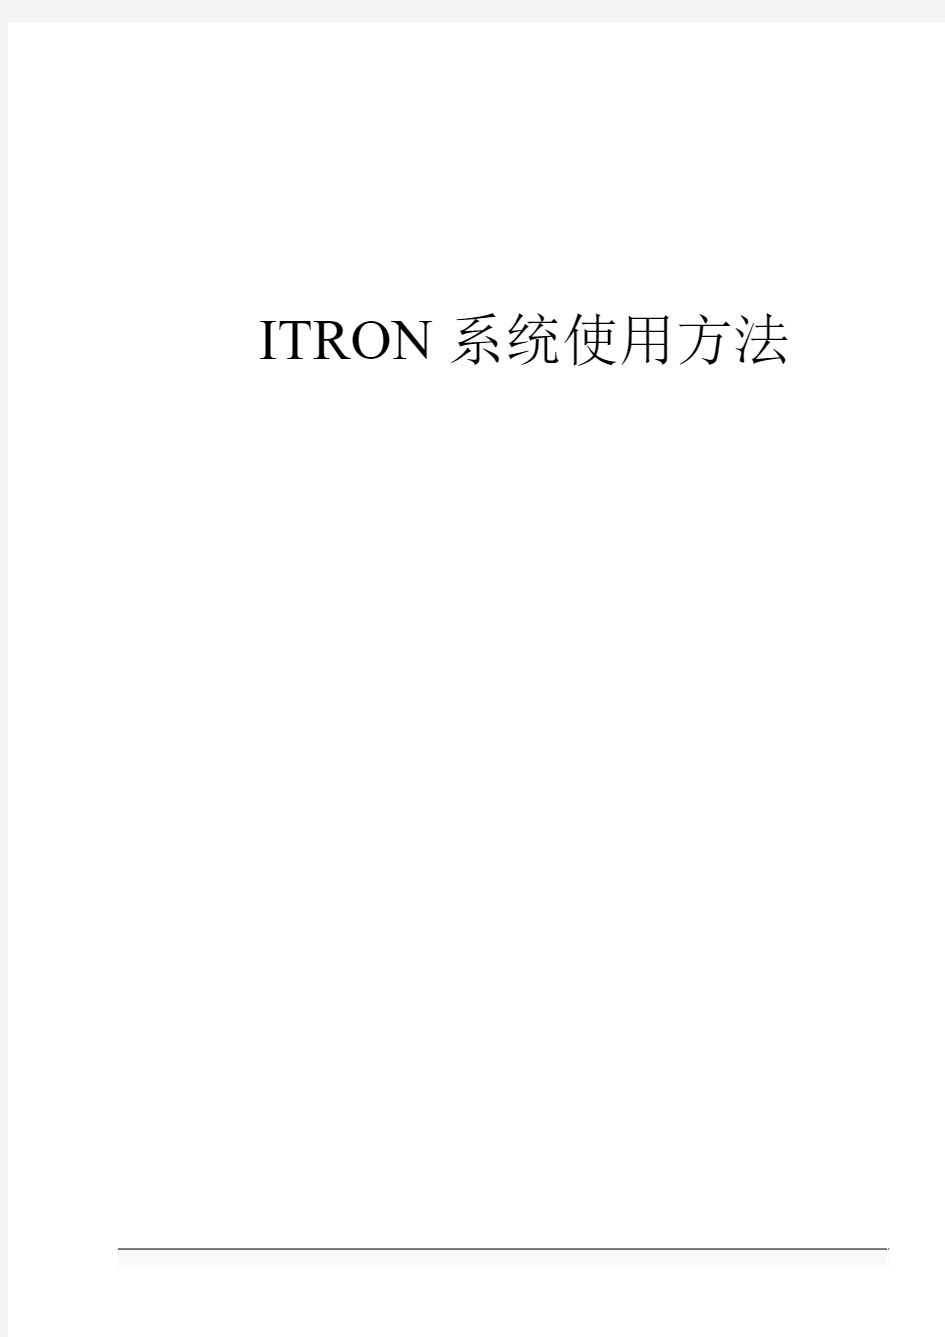 03_操作系统基础-ITRON系统使用方法